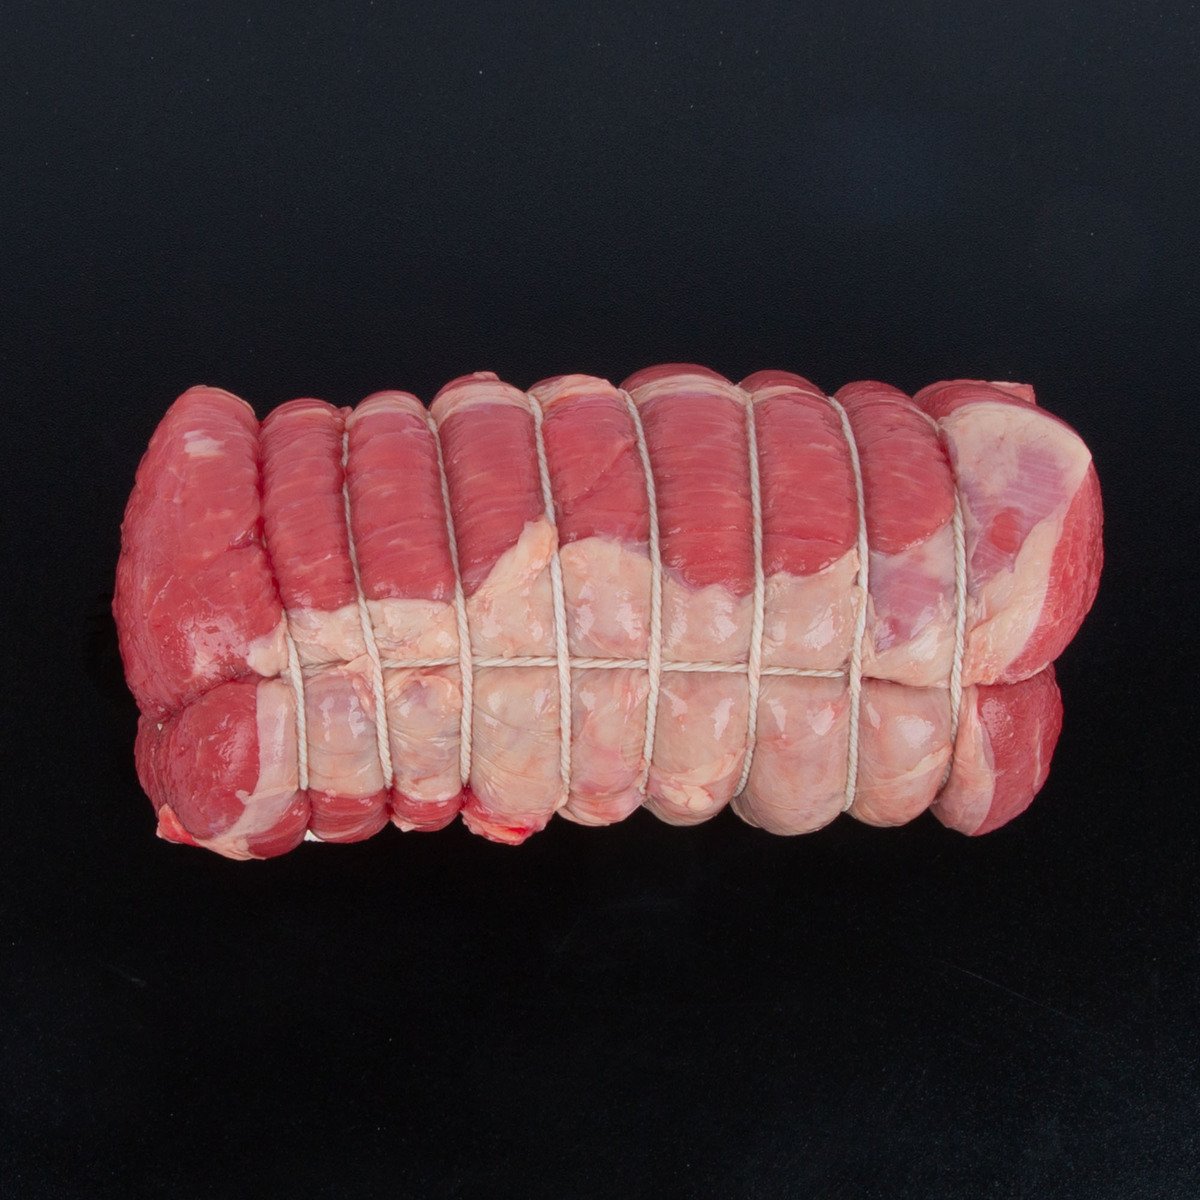 Australian Beef Silverside Roast 600g